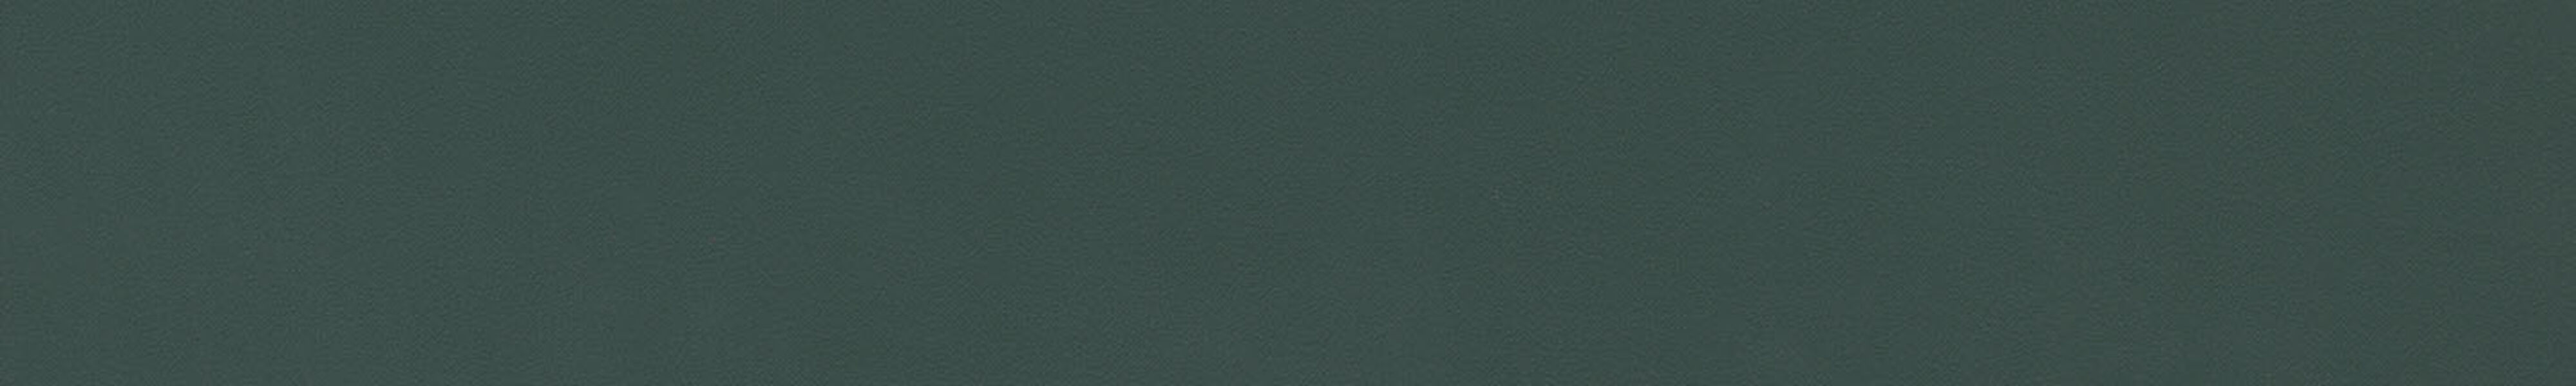 skai® colore classico ULTRA forest       0,35 1440